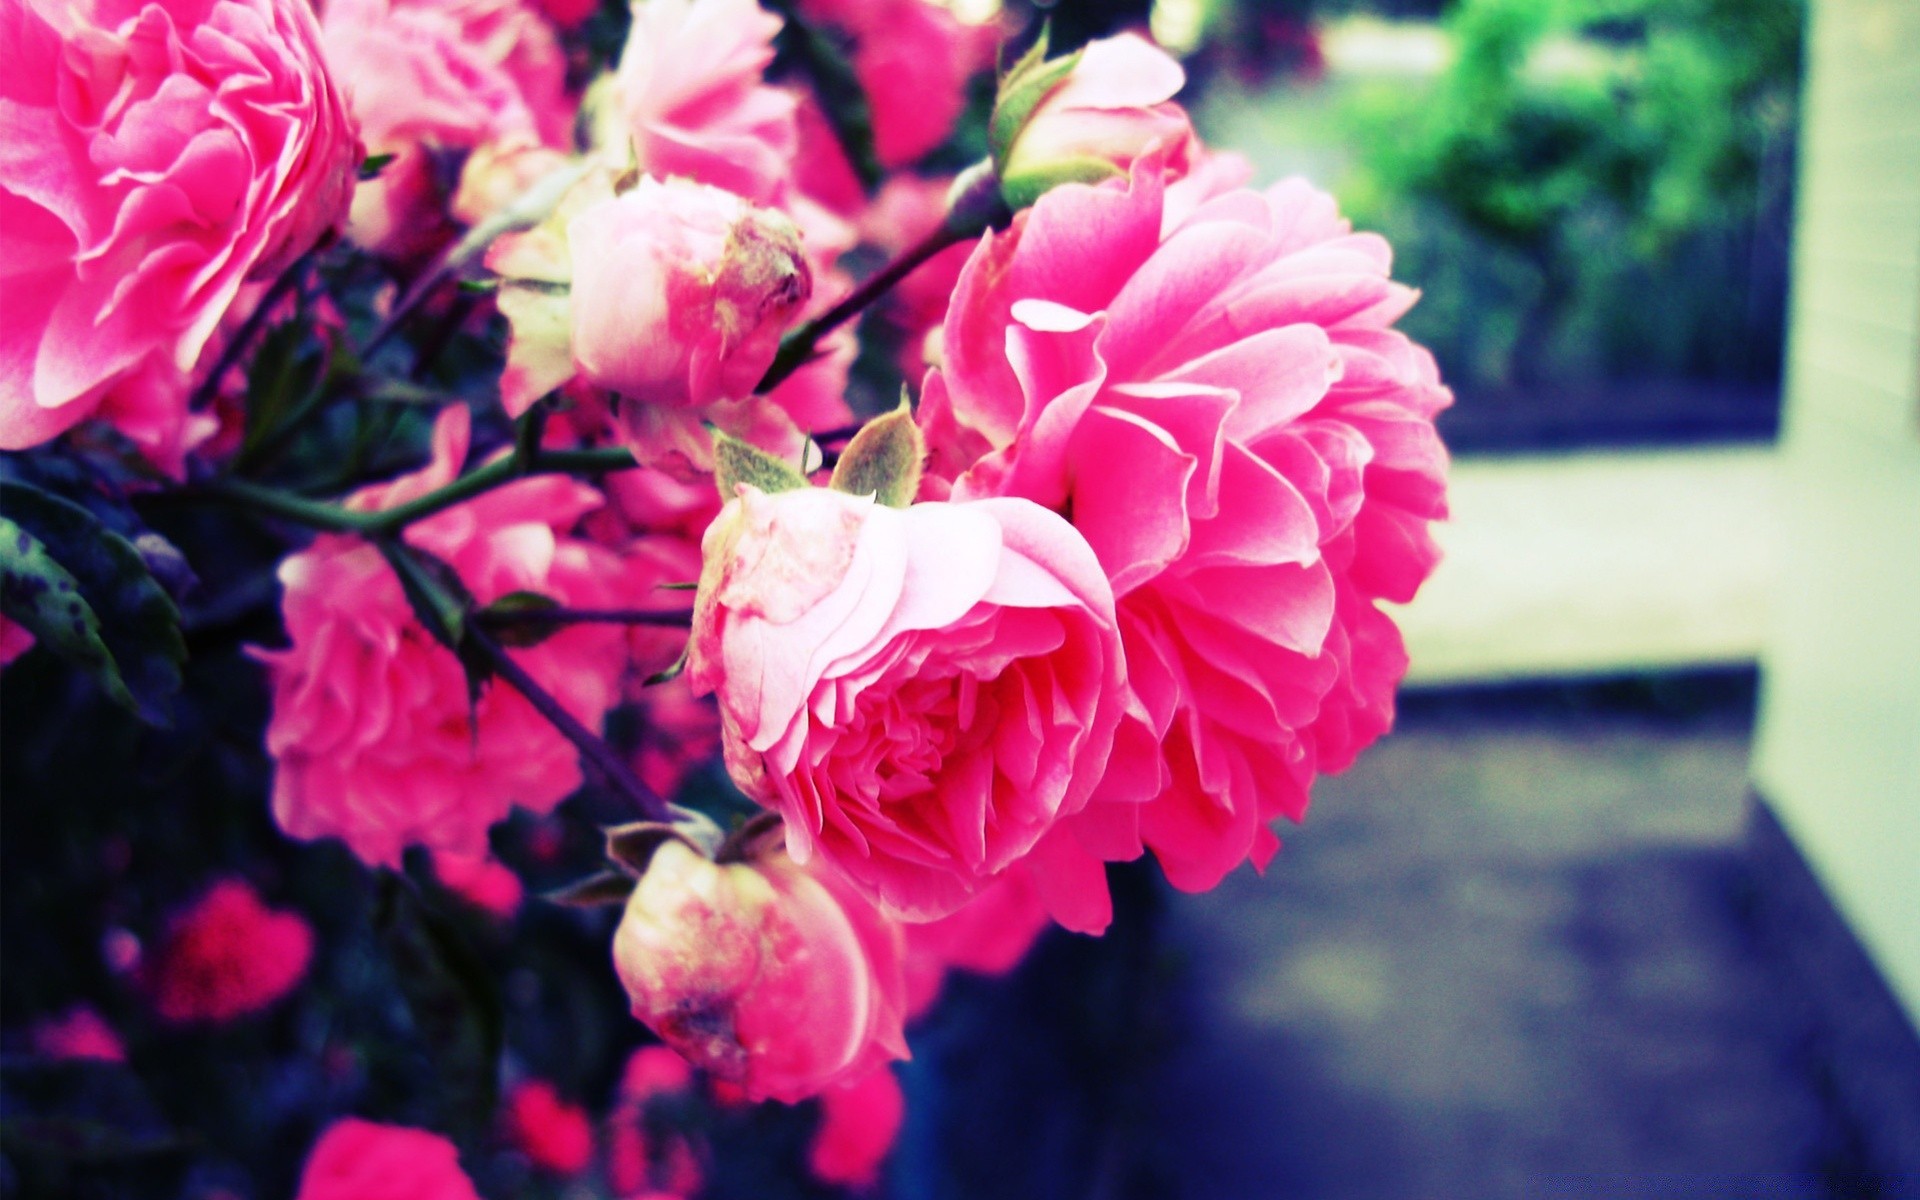 Hoa hồng là loài hoa mang đậm nét đẹp sang trọng, lãng mạn, là biểu tượng của tình yêu và sự trân quý. Hãy chiêm ngưỡng những hình ảnh hoa hồng để tận hưởng vẻ đẹp tinh tế và đầy cảm hứng này.